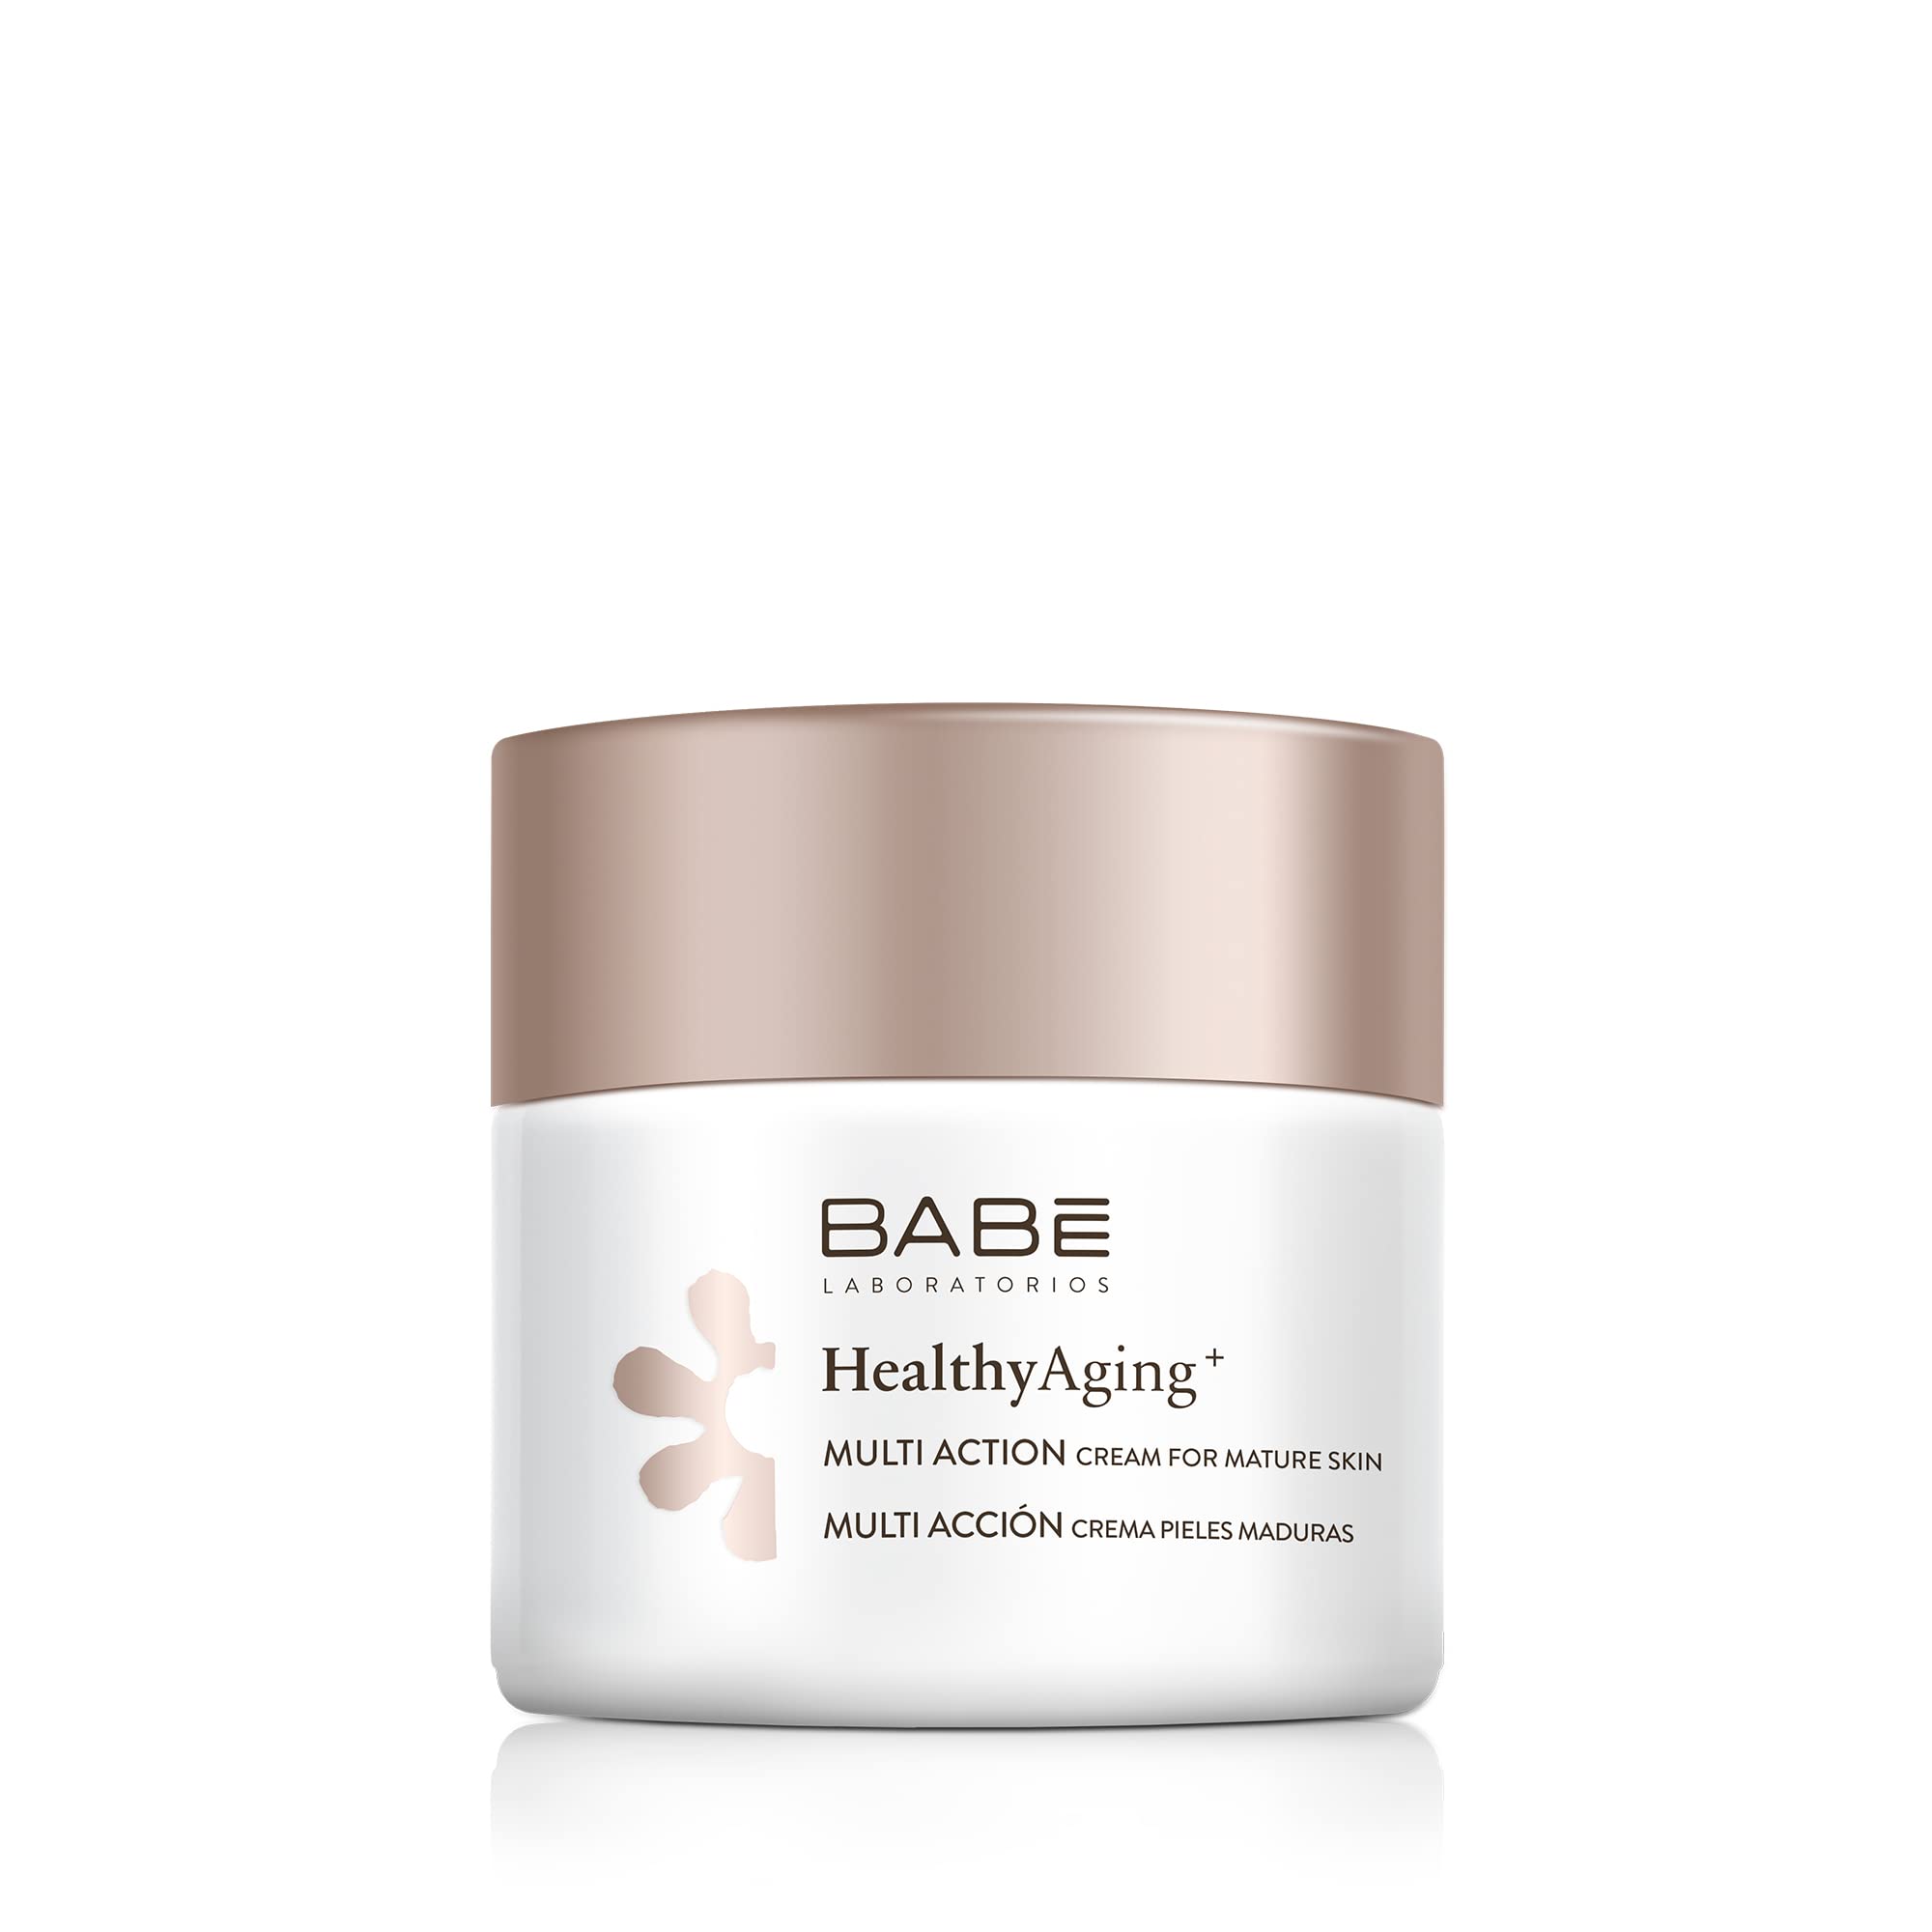 Laboratorios Babé - Multi Acción Crema para piel madura | HealthyAging+ | Facial Hidratante 50 ml | Antiarrugas | Nutritiva | Hidratación Profunda | Aspecto Luminoso | Antioxidante